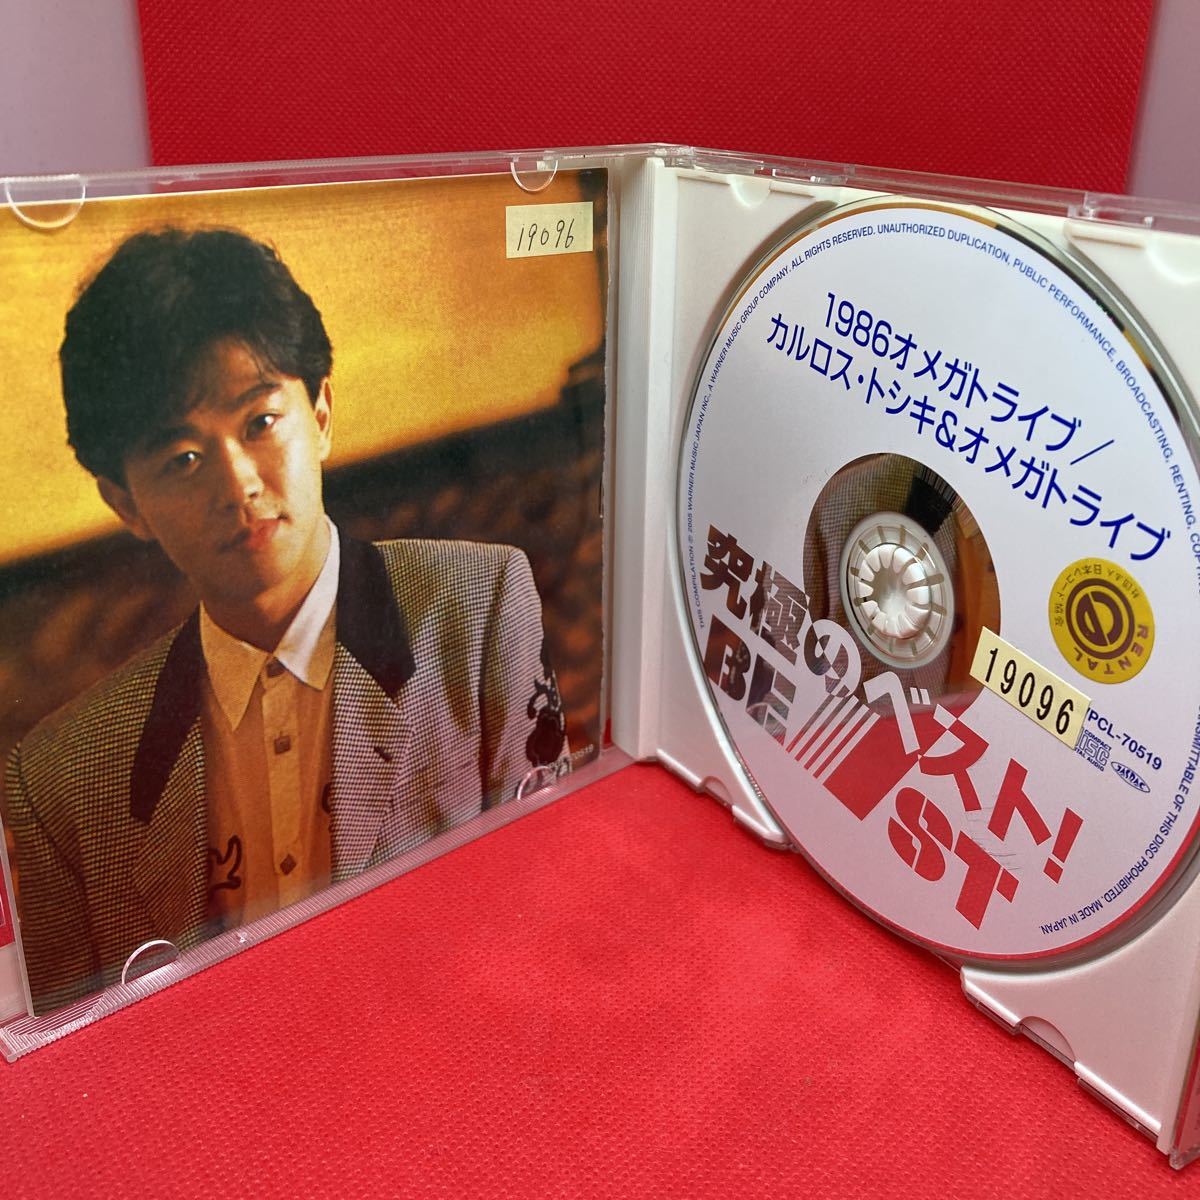 【ベスト盤】1986オメガトライブ/カルロス・トシキ&オメガトライブ 究極のベスト! / CD ベストアルバム_画像2